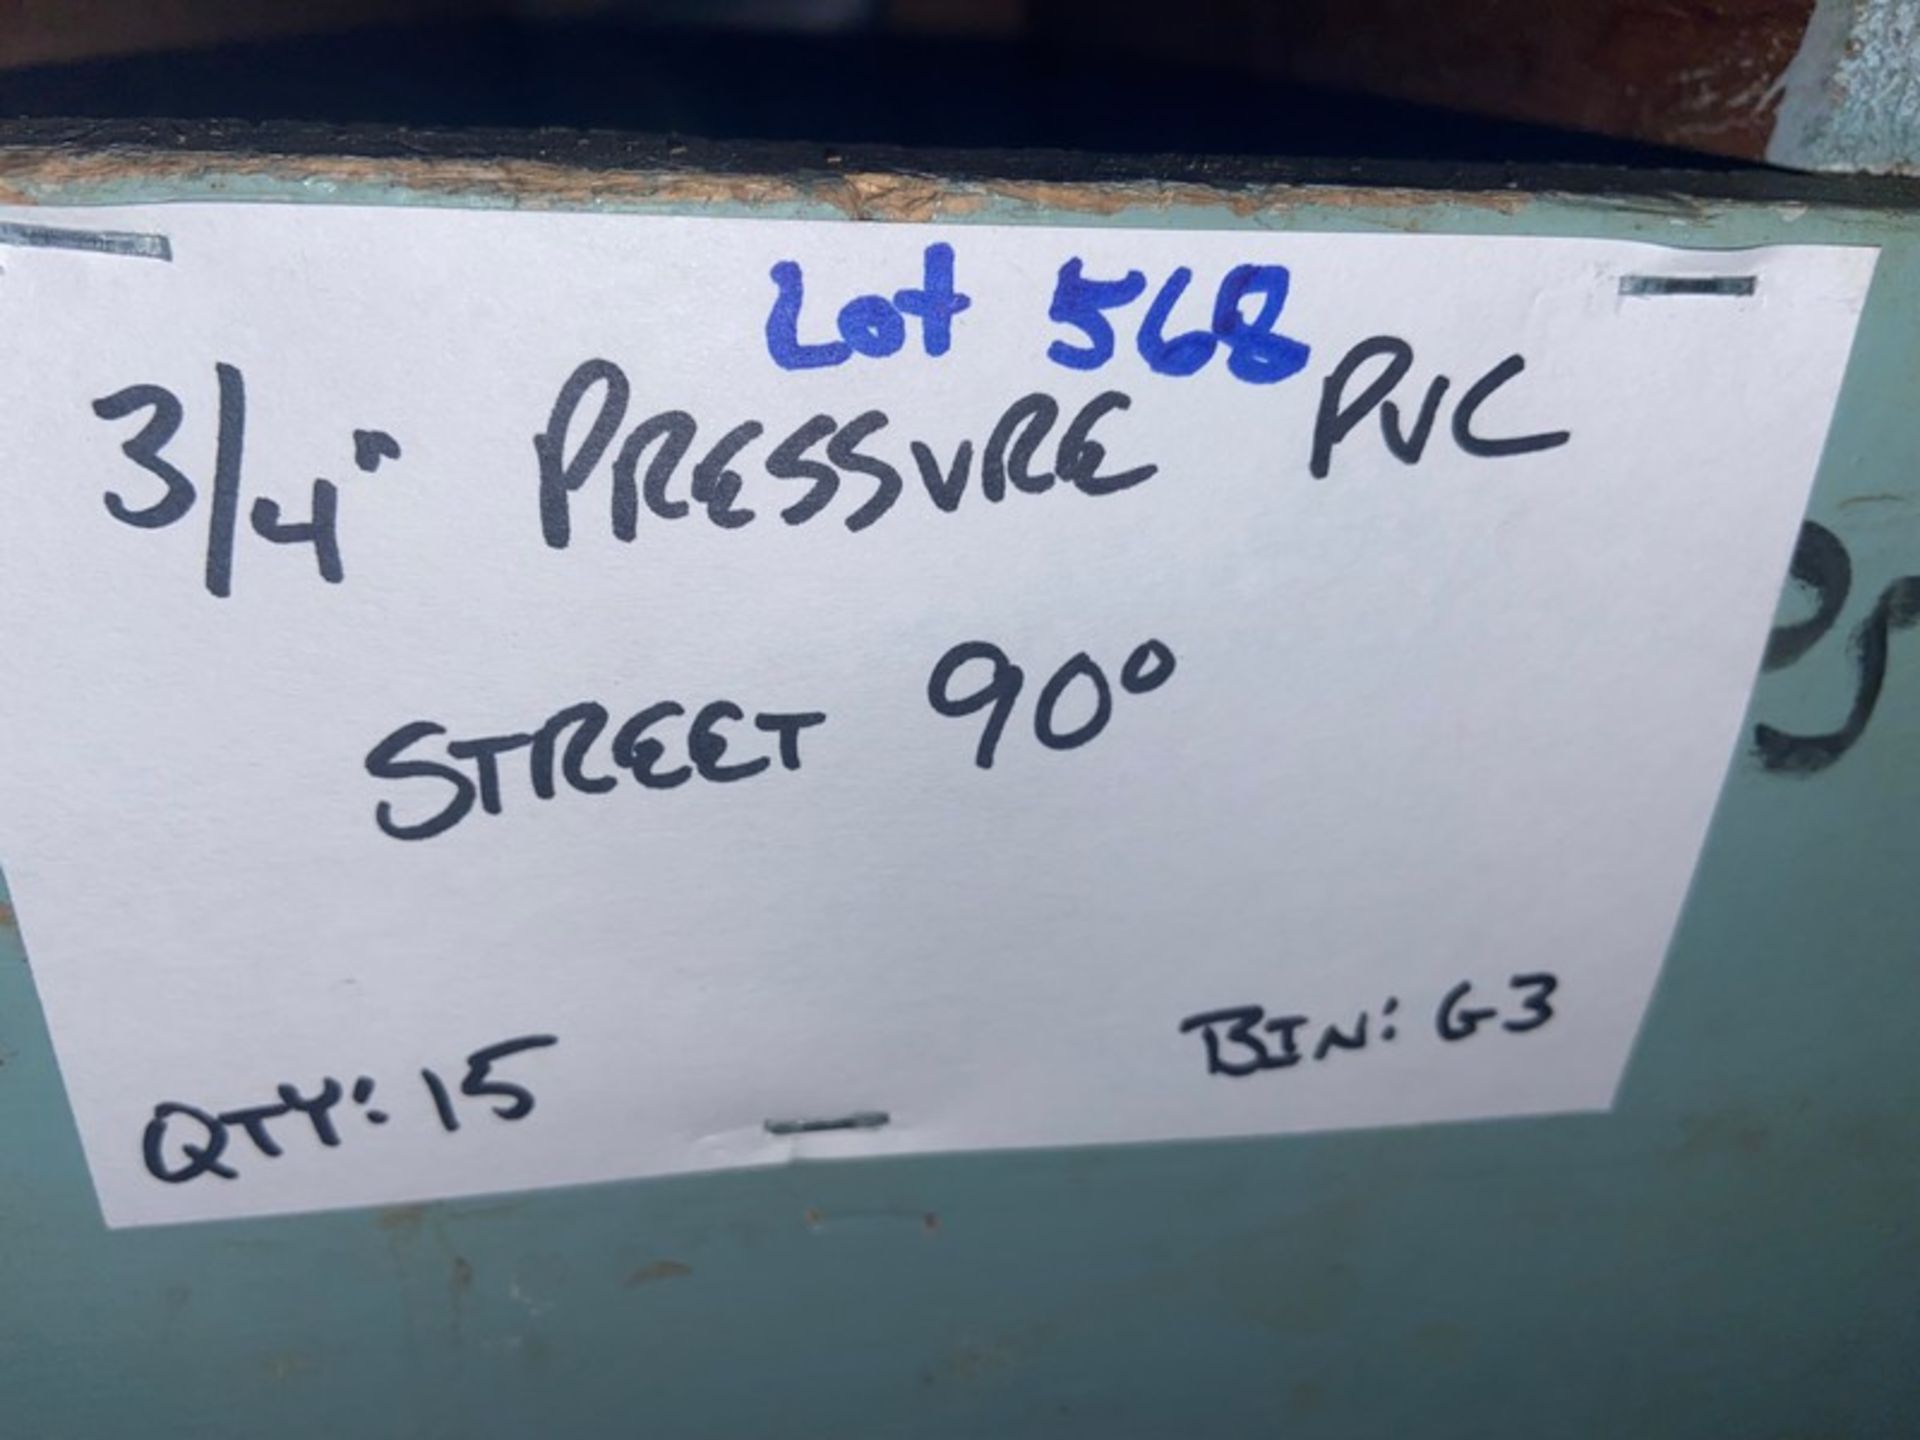 (15) 3/4” Pressure PVC Stree5 (Bin:G3), Includes (48) 3/4” Pressure PVC 45’ (Bin:G3) (LOCATED IN - Bild 7 aus 8